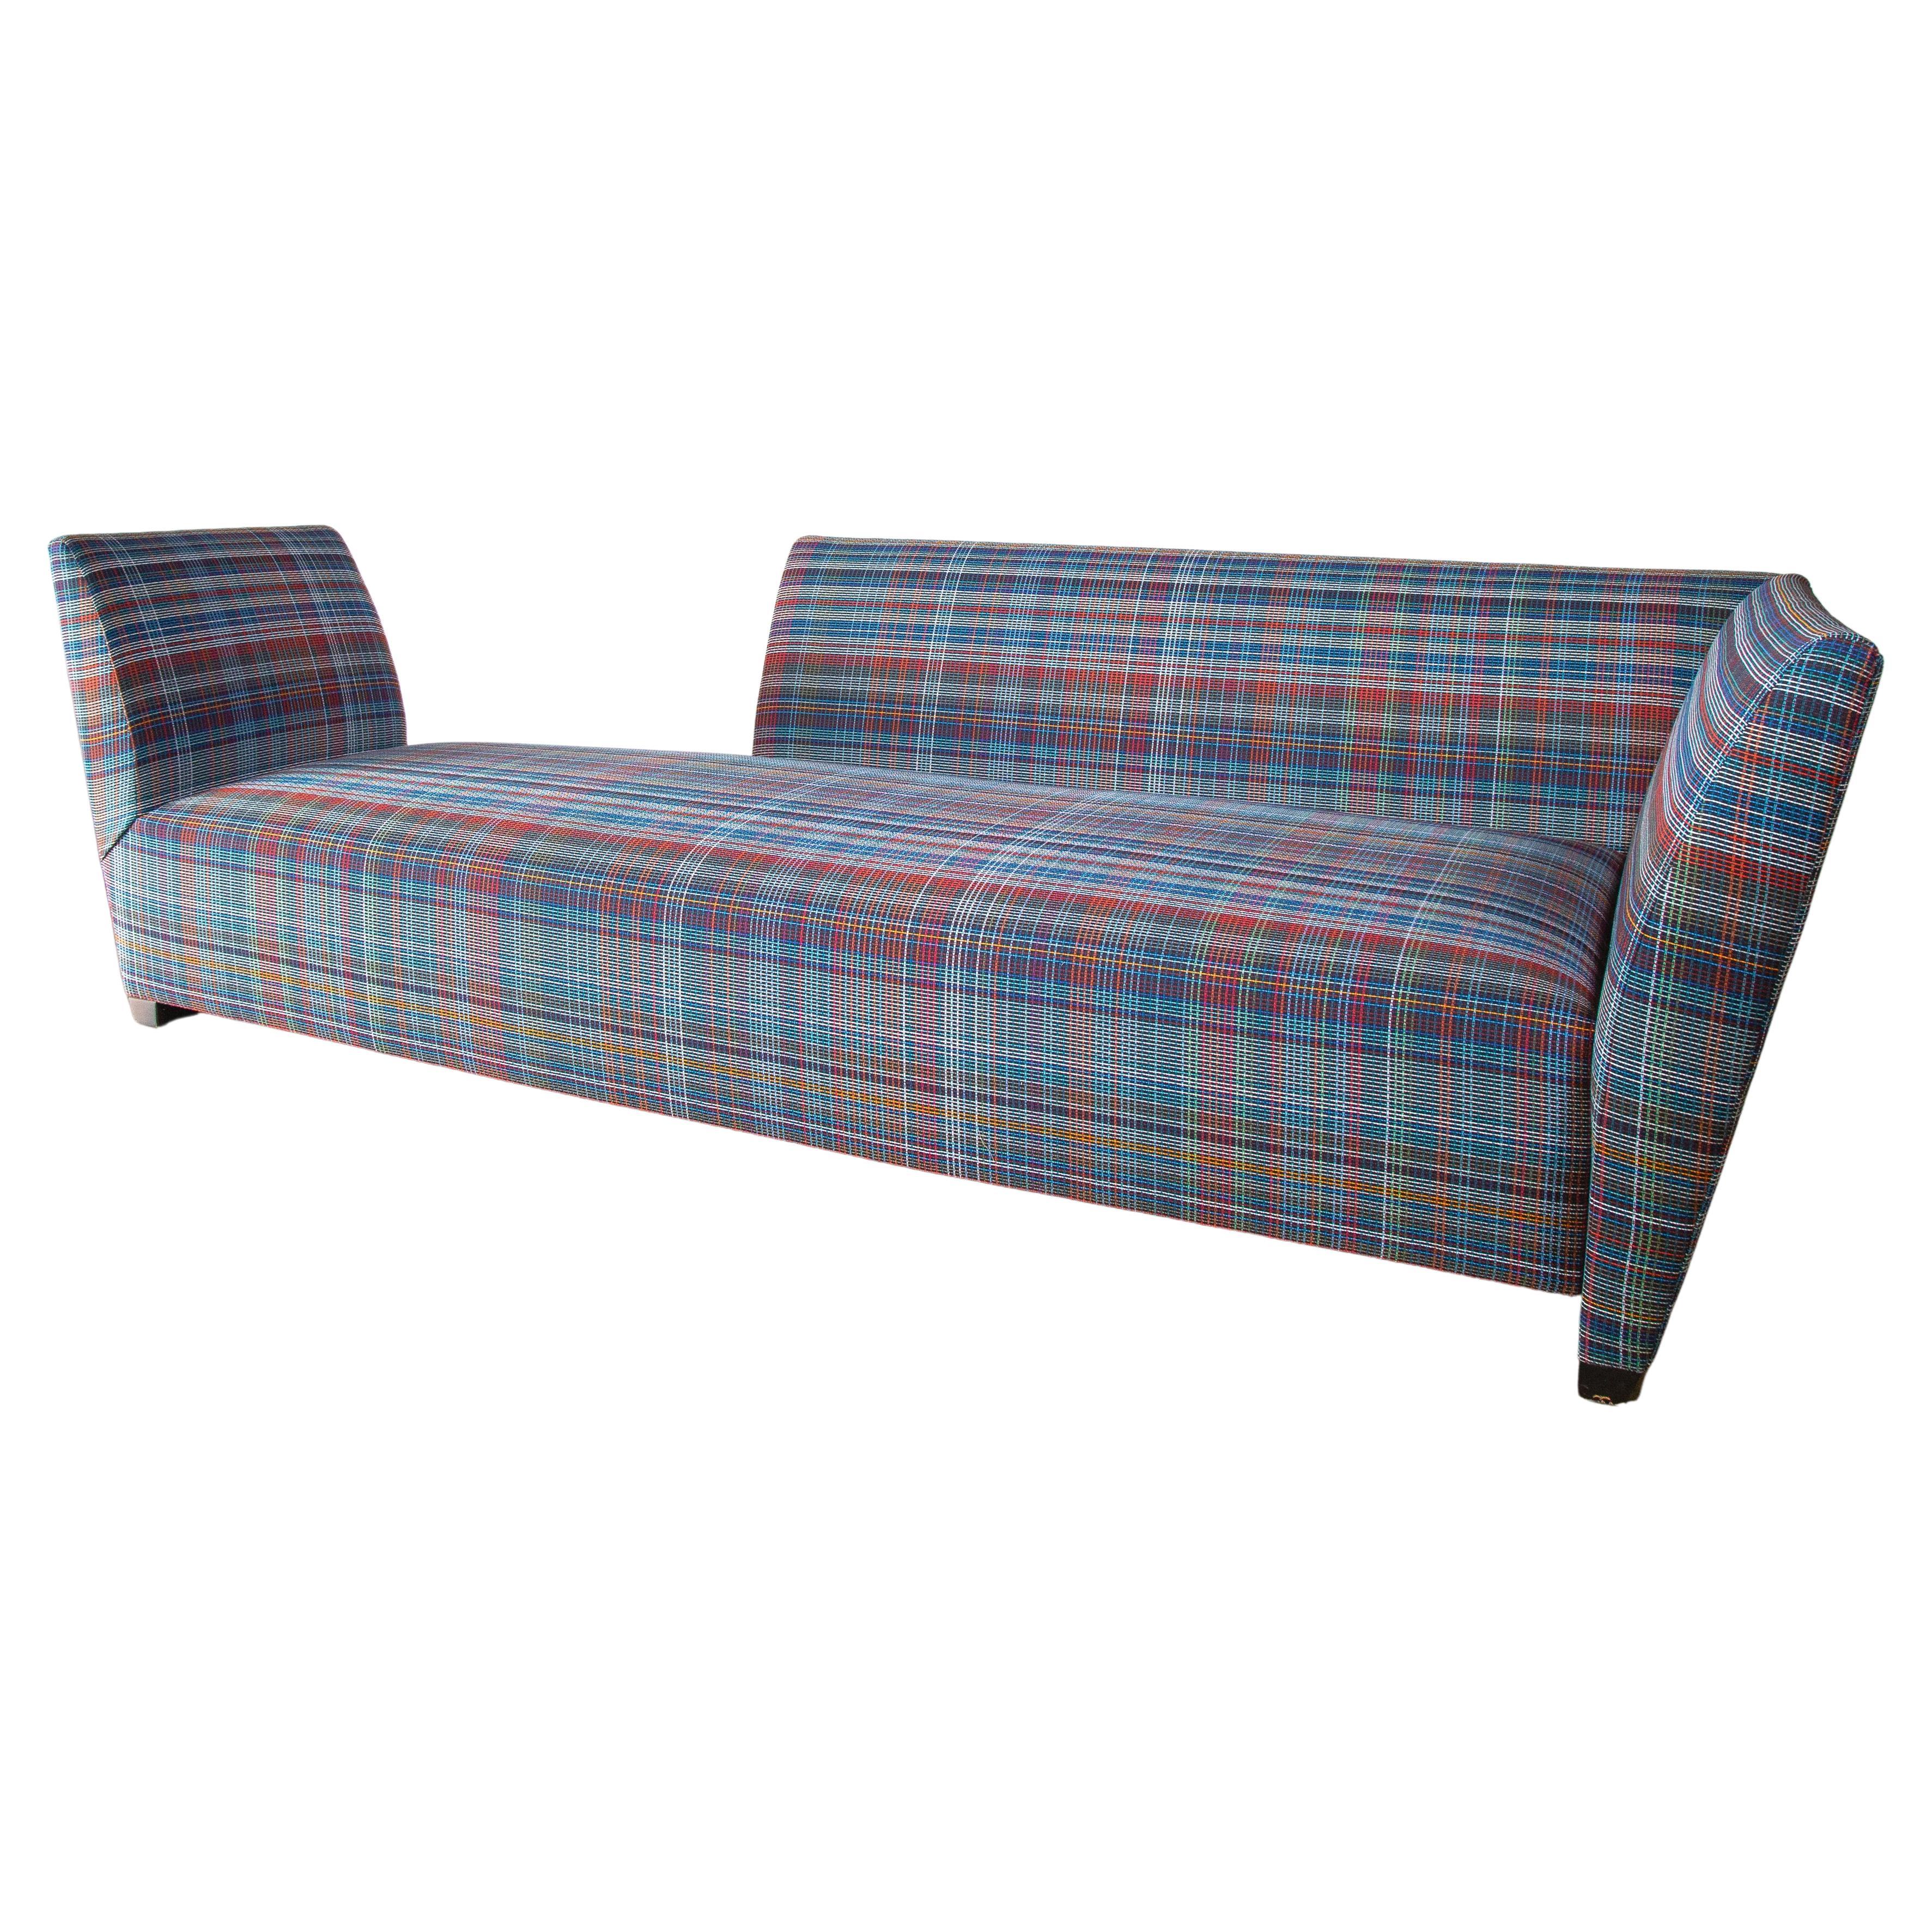 Canapé Island de Joe D'Urso pour Donghia Knoll, chaise en tissu écossais en vente